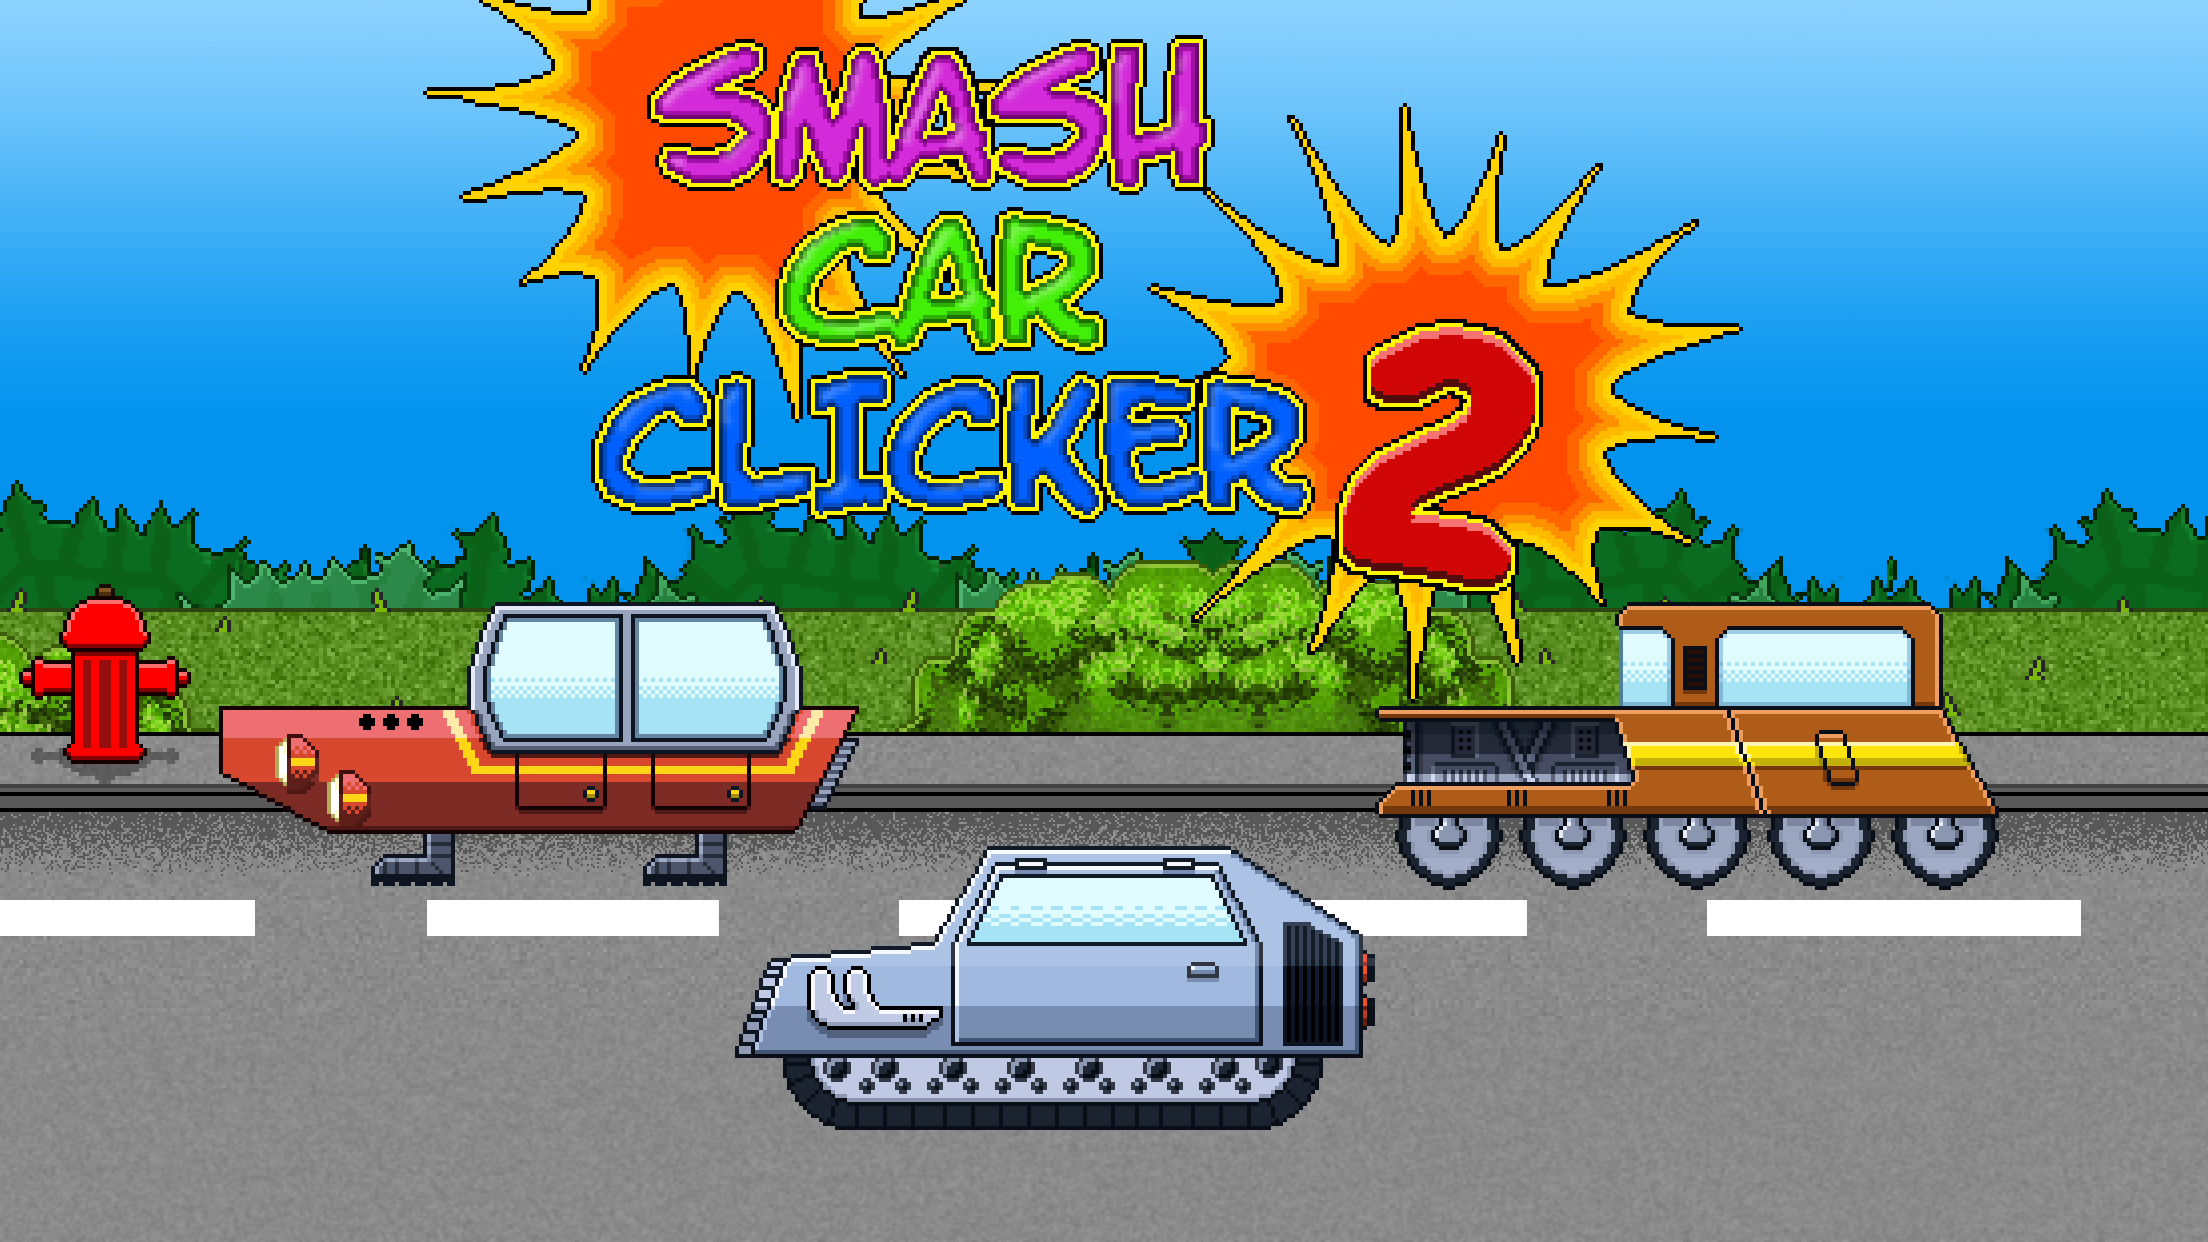 Screenshot 1 of स्मैश कार क्लिकर 2 आइडल गेम 2.1.0